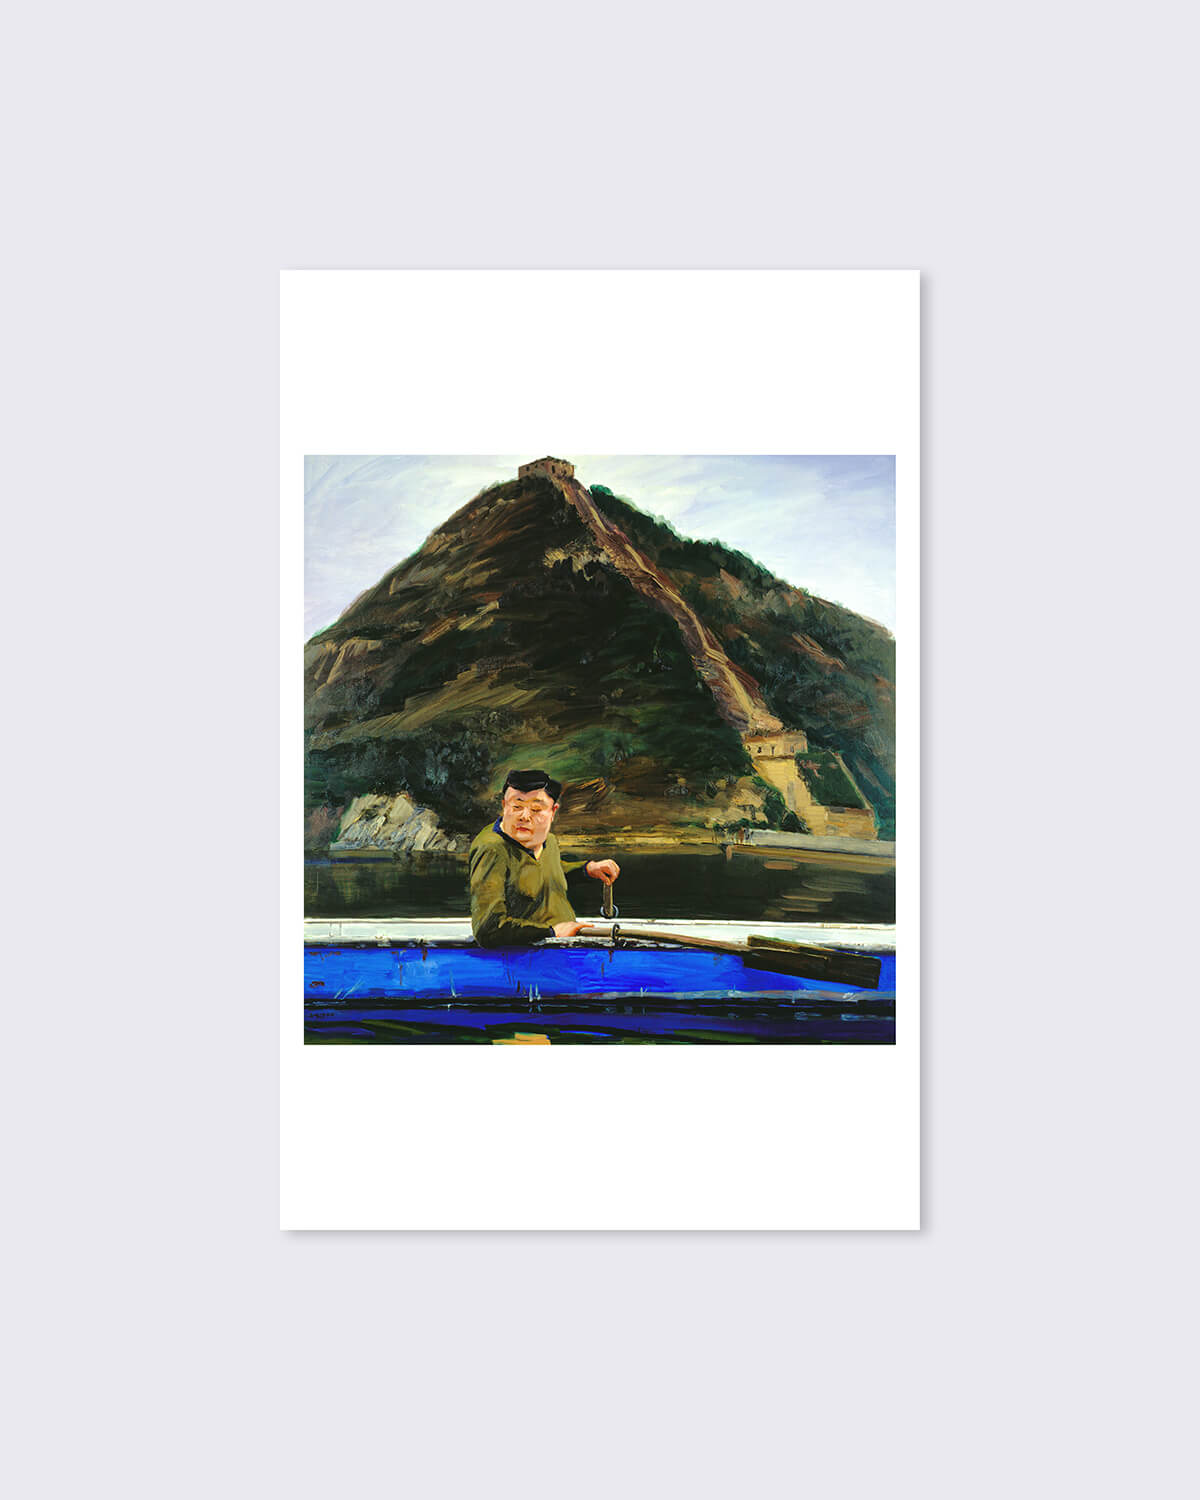 Liu Xiaodong, 'A Mountain', Print